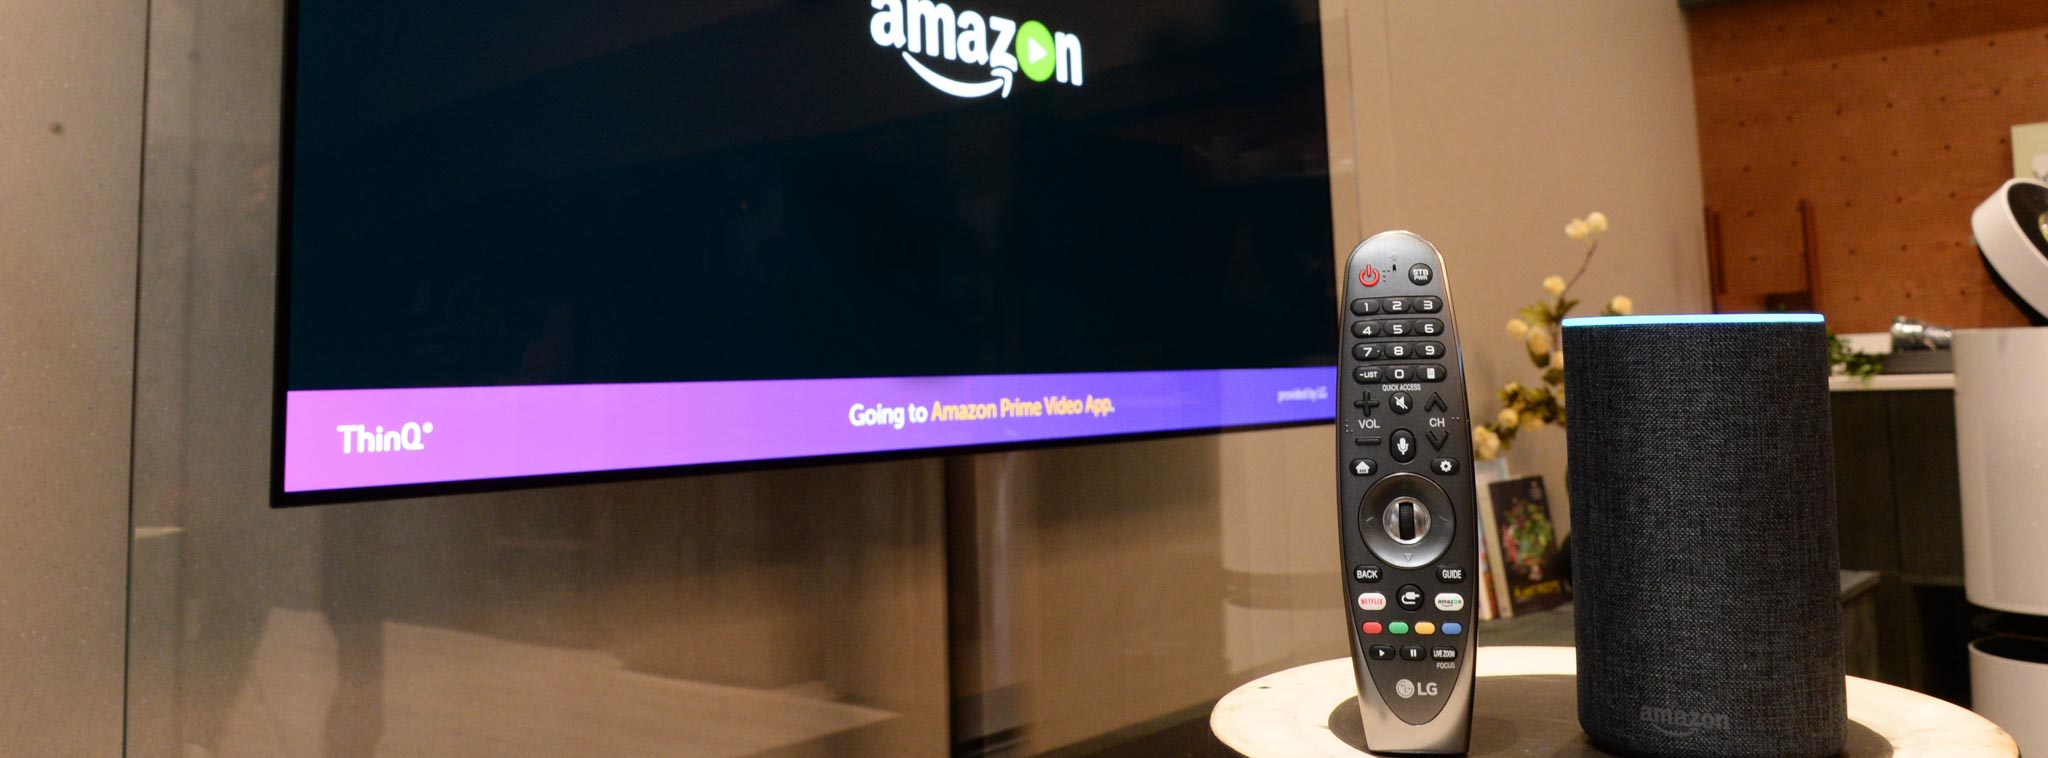 [CES18] Các dòng TV LG 2018 tích hợp AI sẽ hỗ trợ điều khiển bằng giọng nói từ thiết bị Amazon Alexa